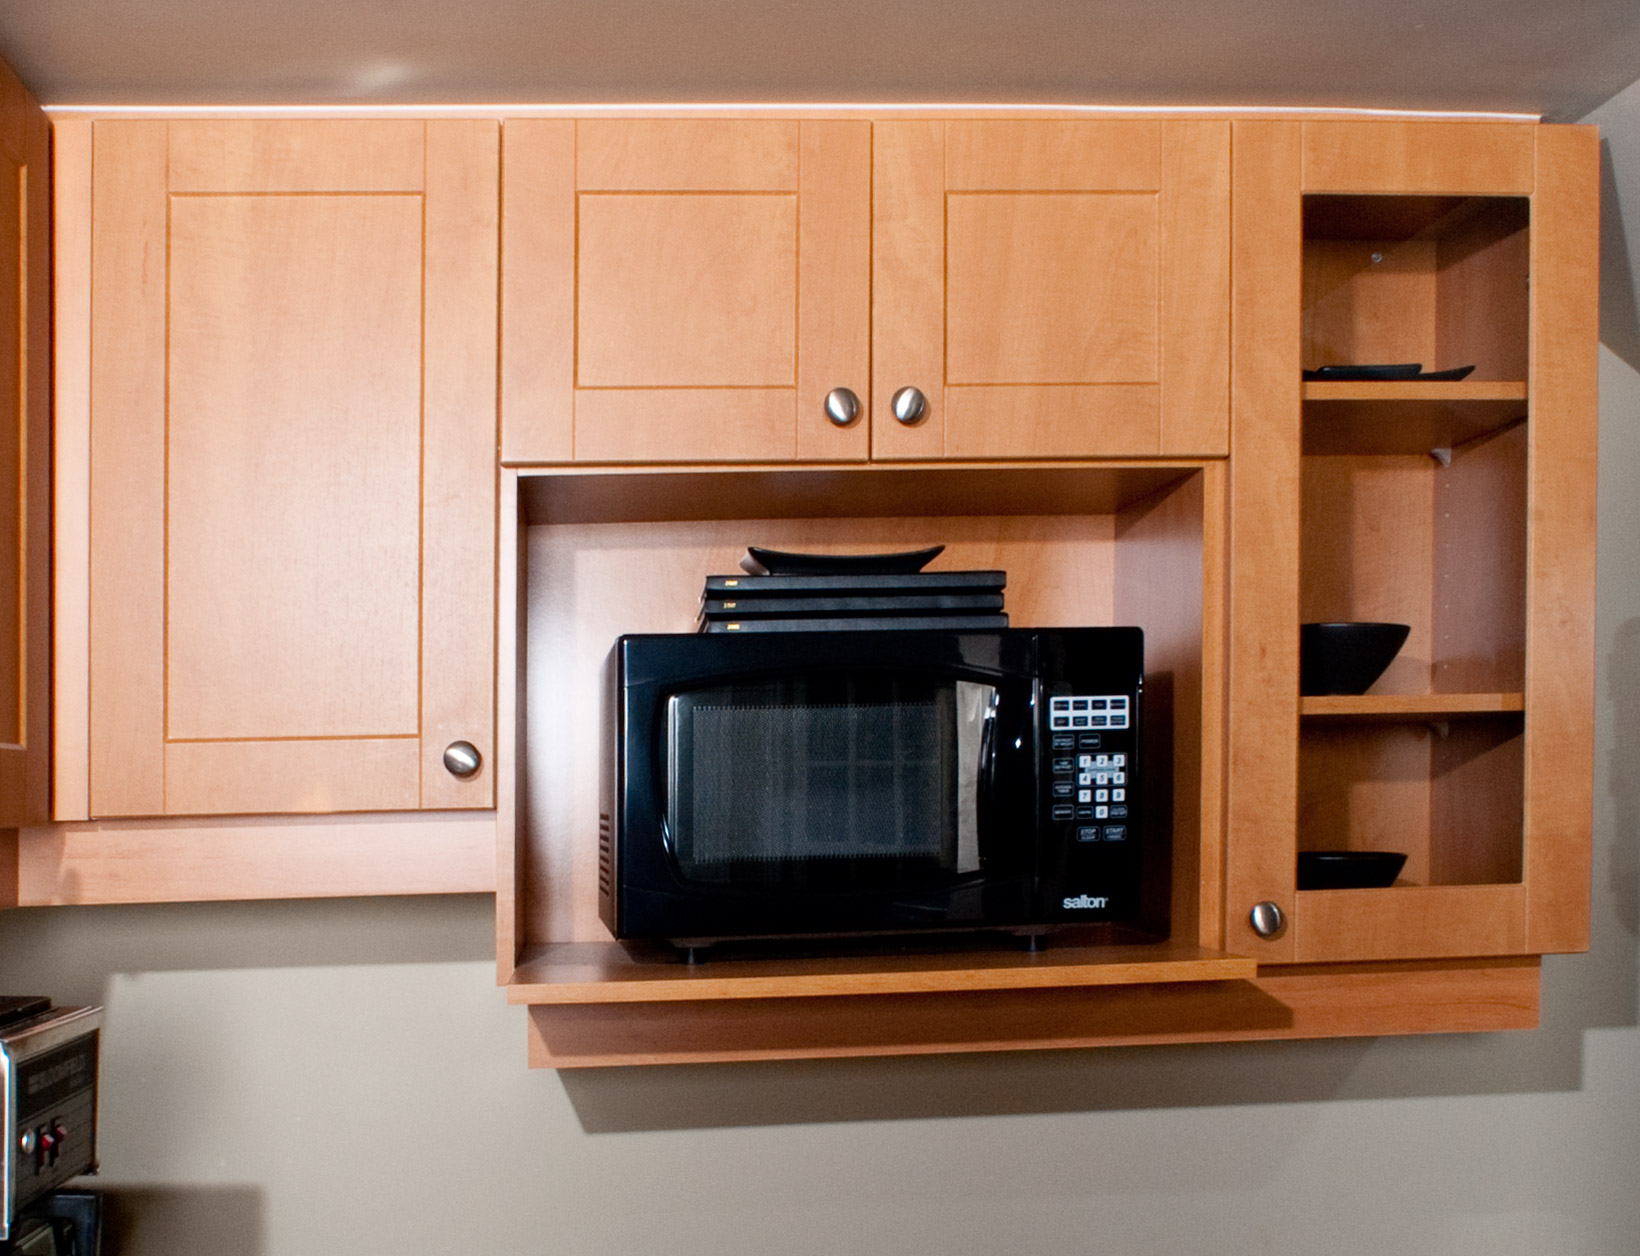 kitchen microwave shelf design